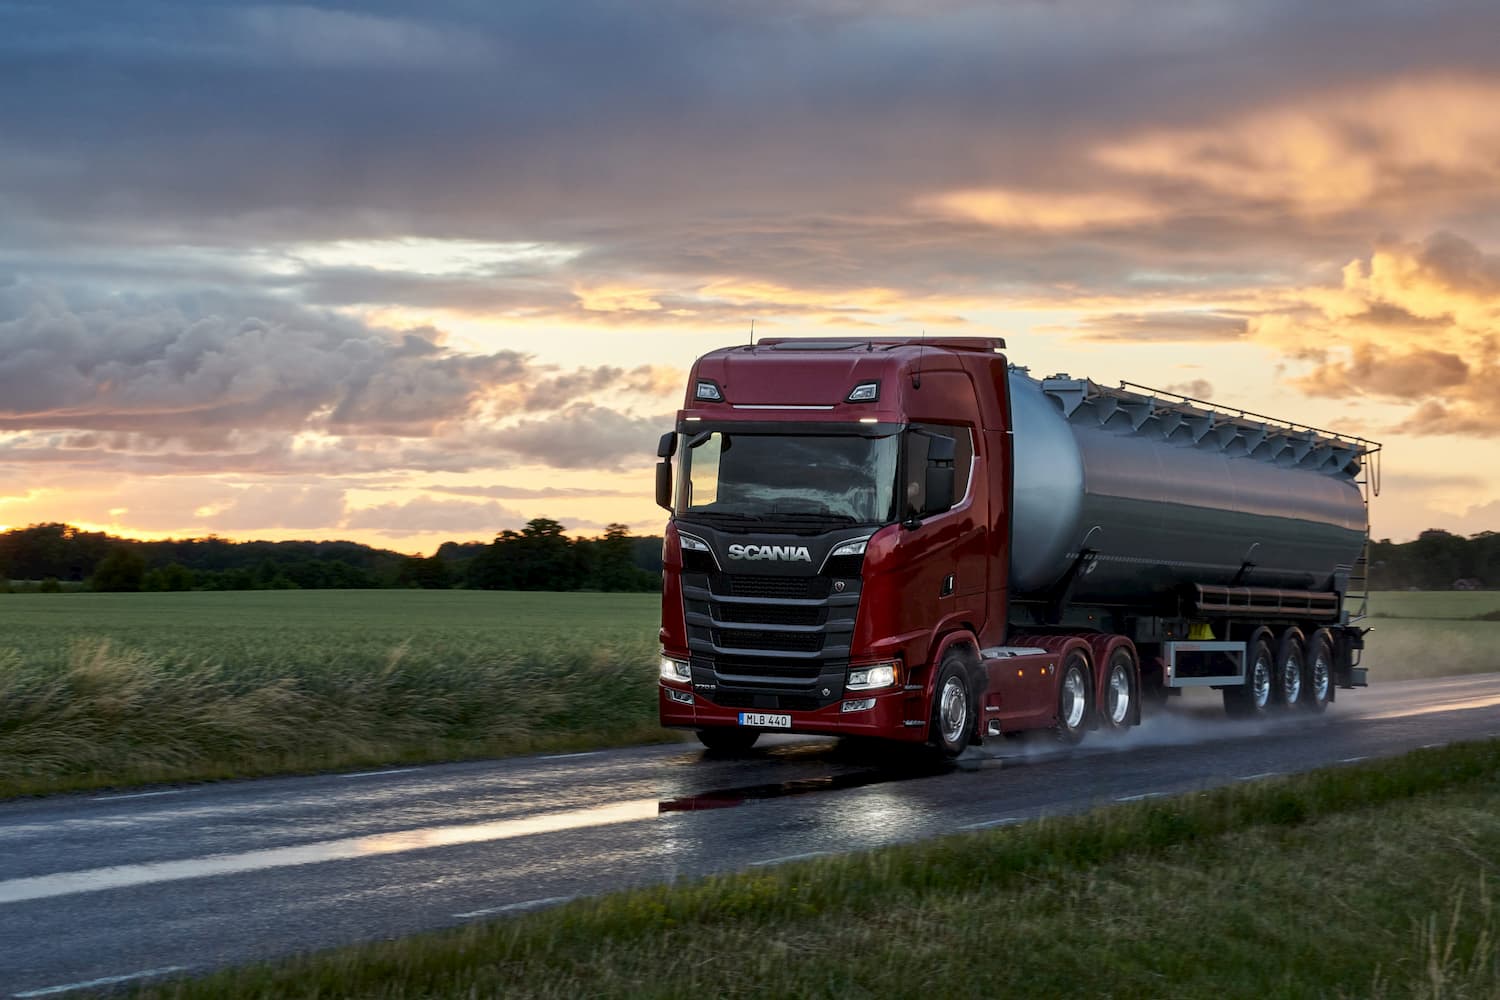  Scania lança caminhão de série mais potente do mundo